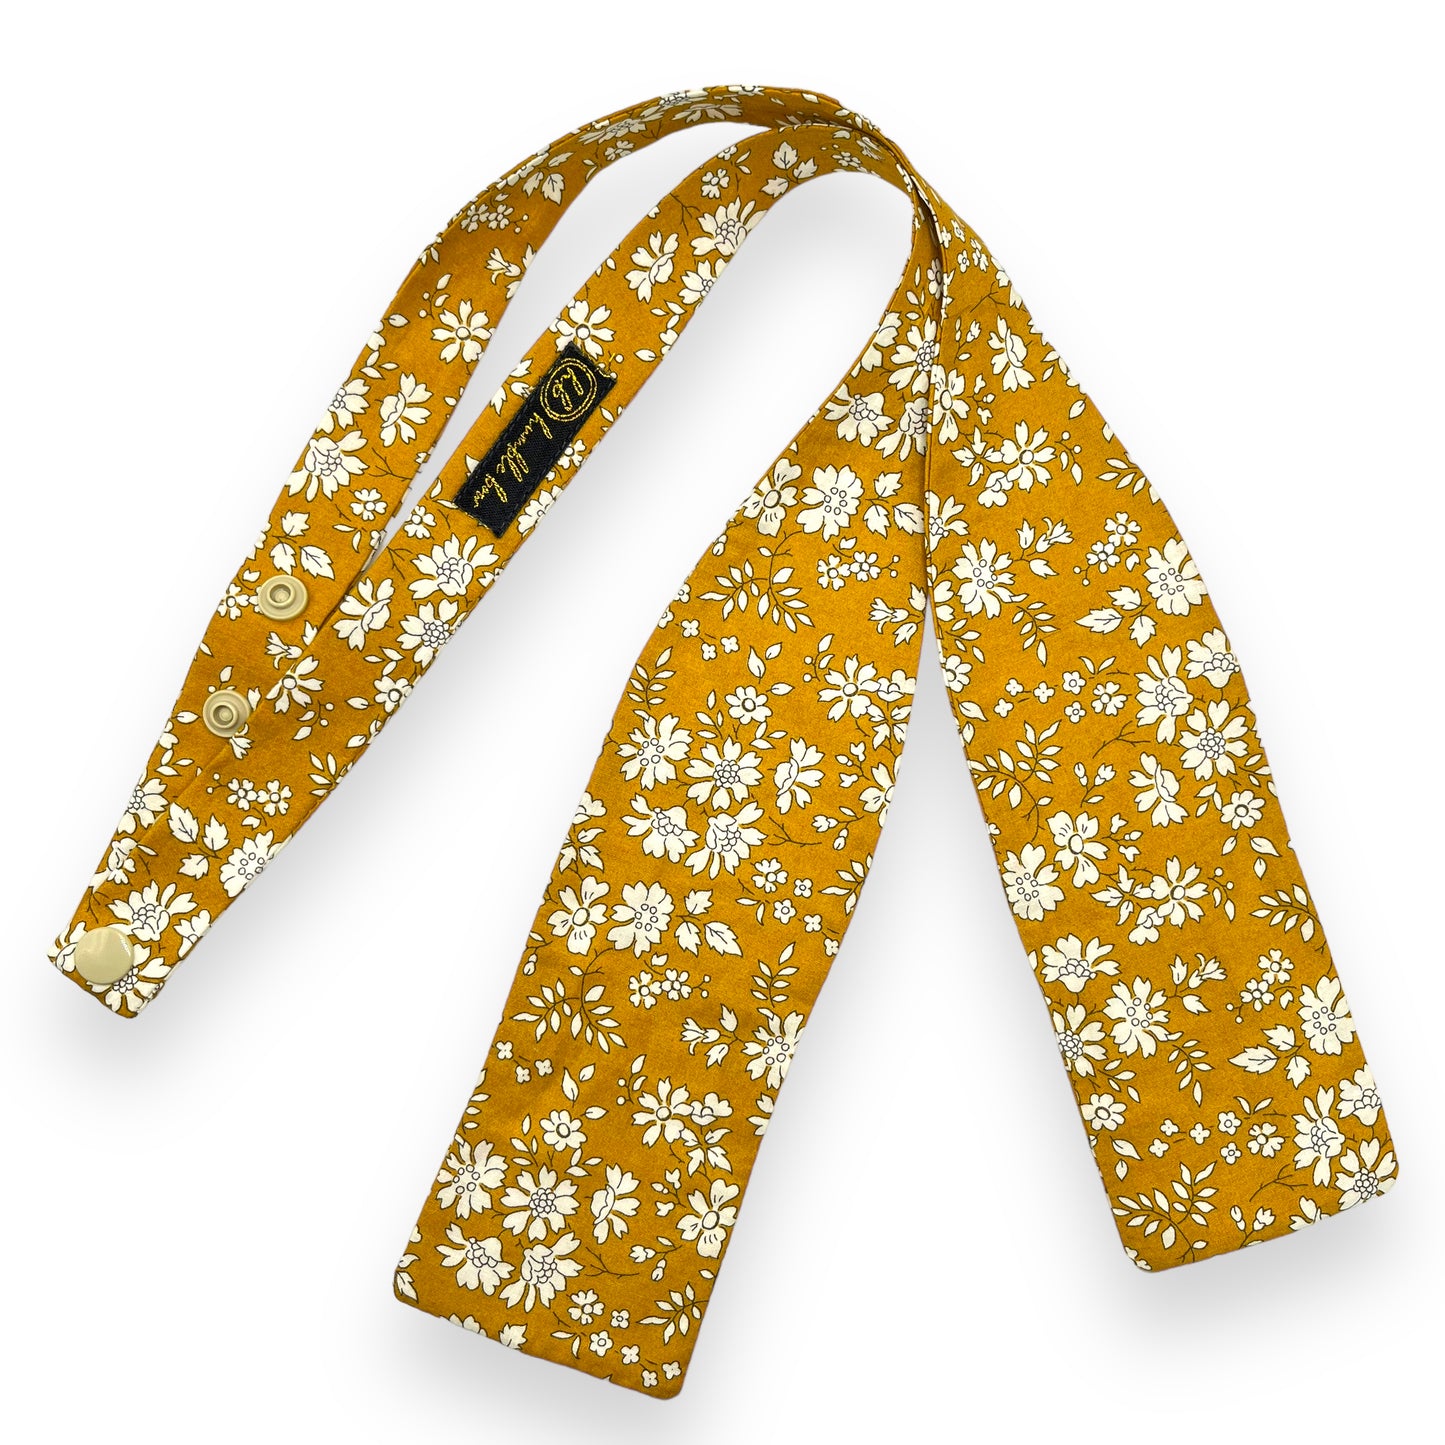 Bow Tie - Liberty Capel Gold